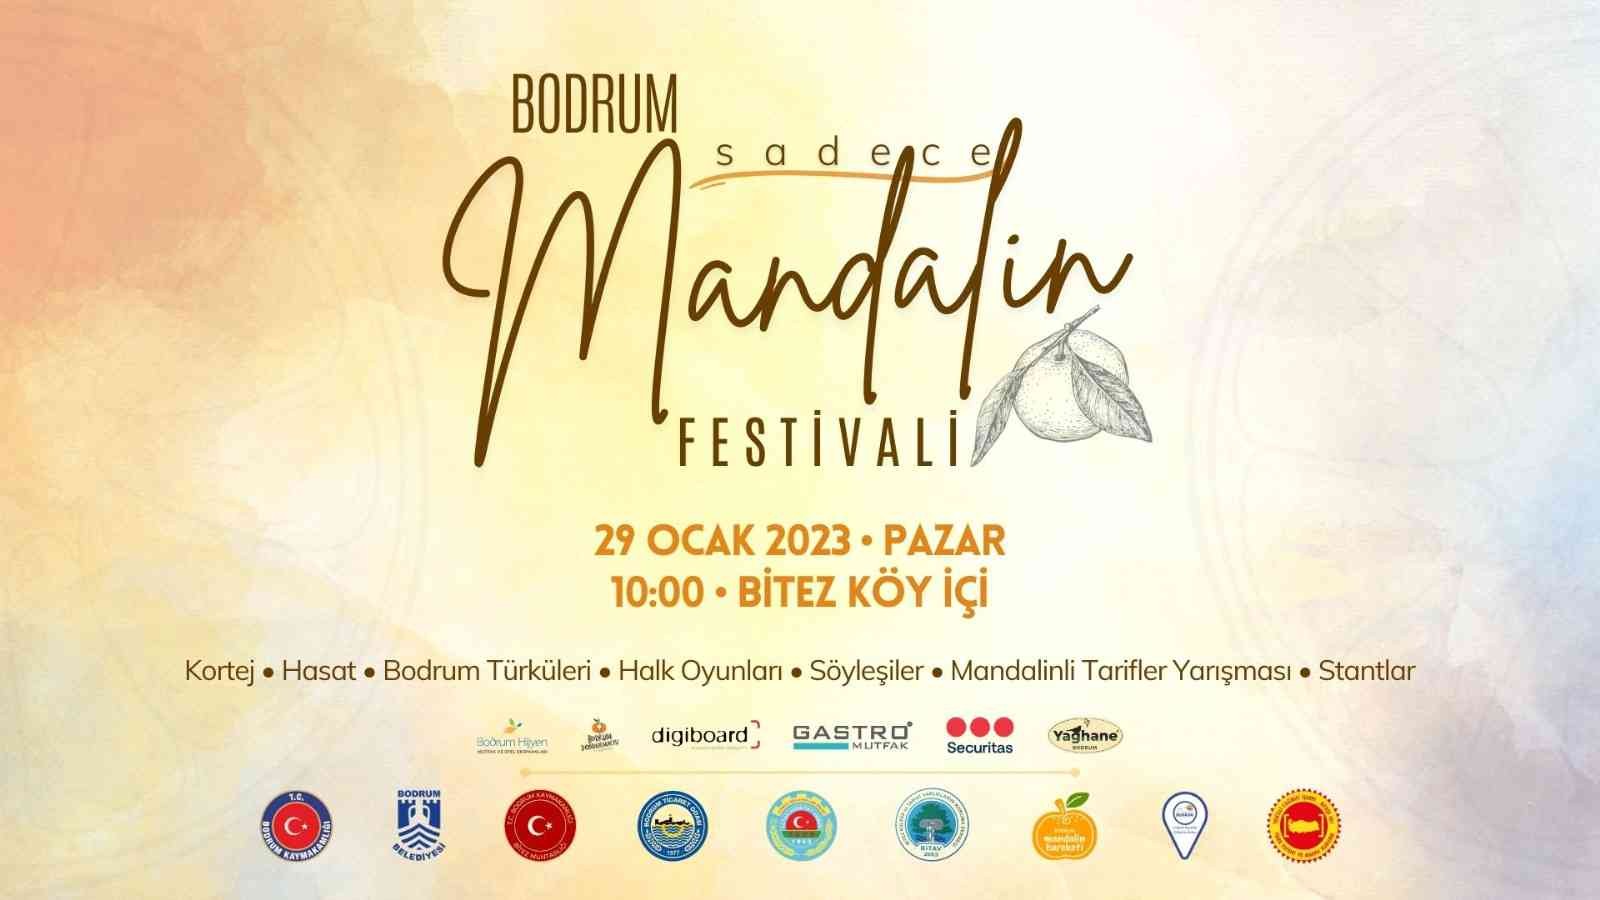 Bodrum’da, “Sadece Mandalin Festivali 2023” hafta sonu yapılacak